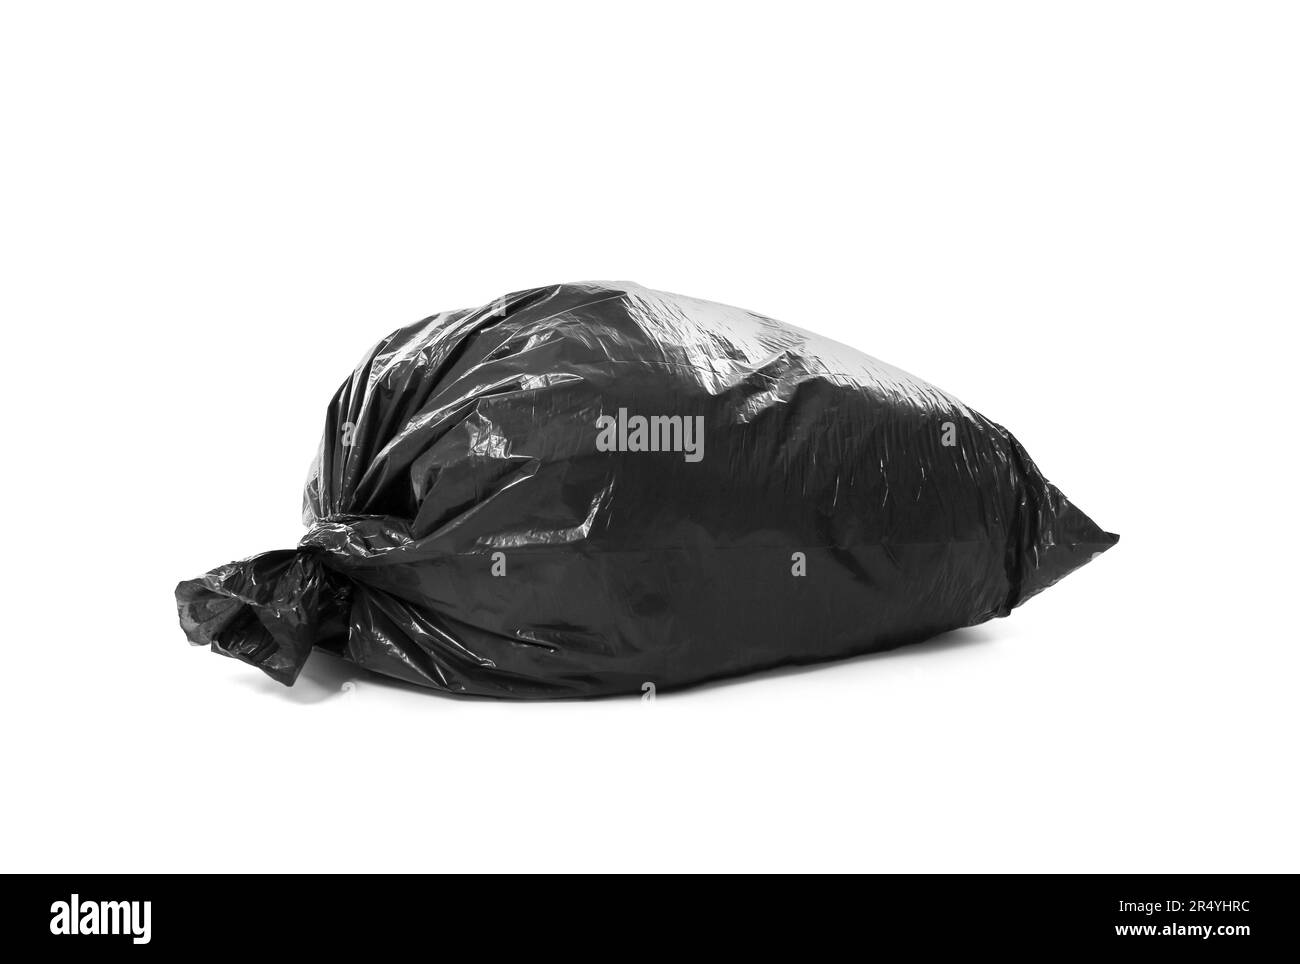 Compostable Black Trash Bag - Go-Compost